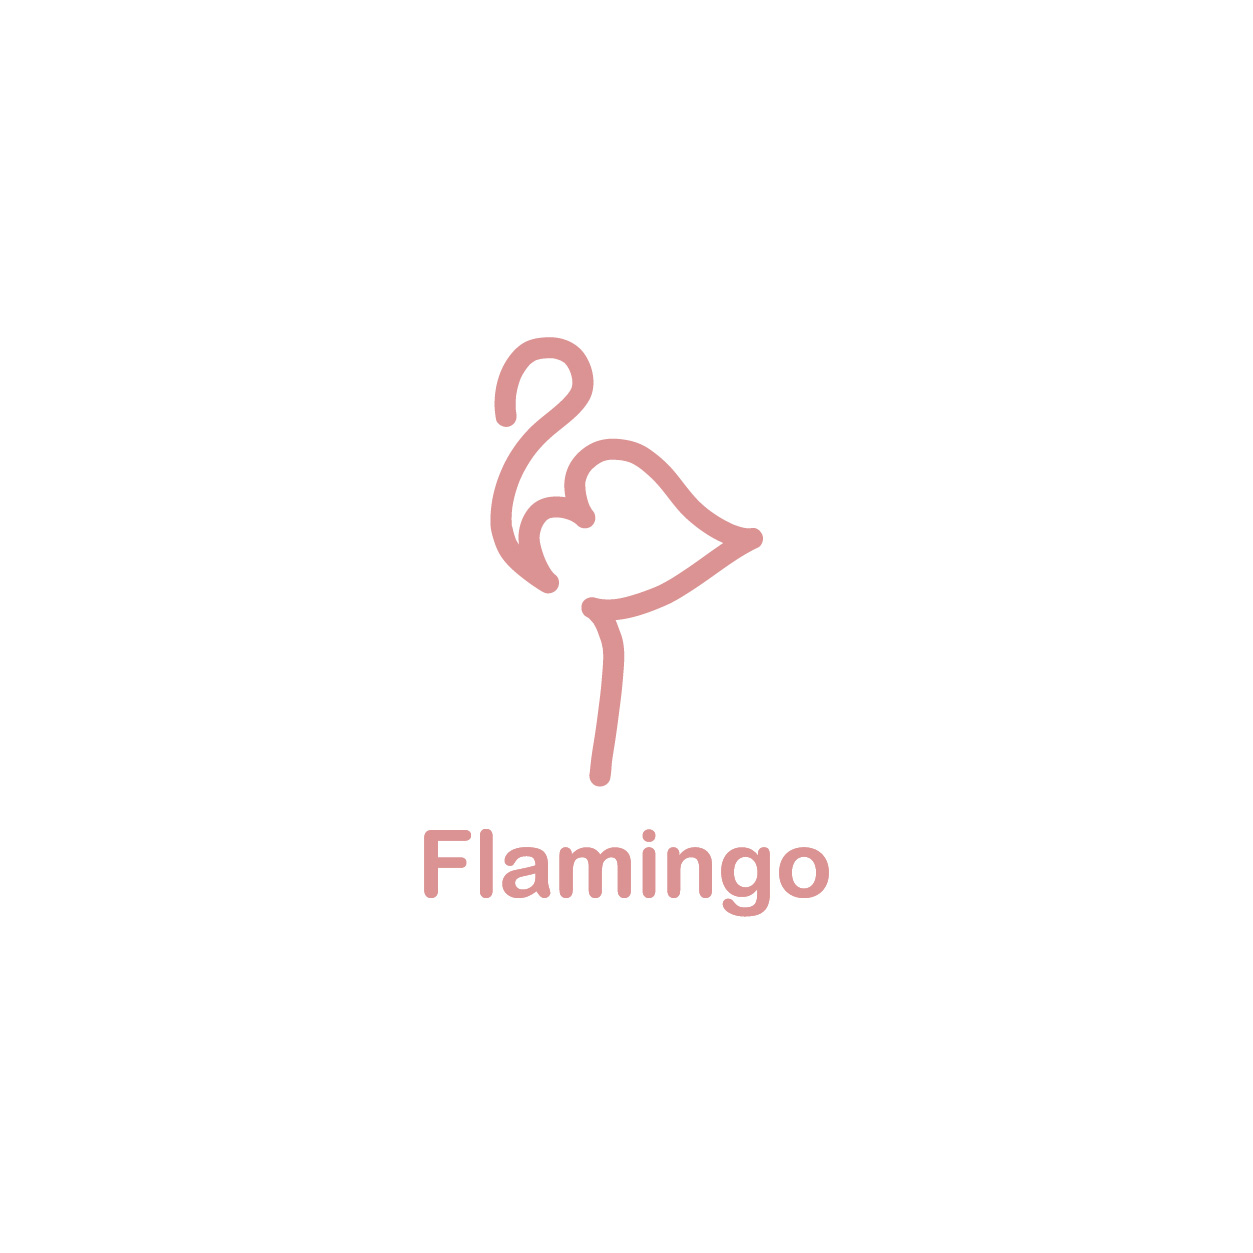 Flamingo Brand Logo Design フラミンゴ ブランドロゴデザイン